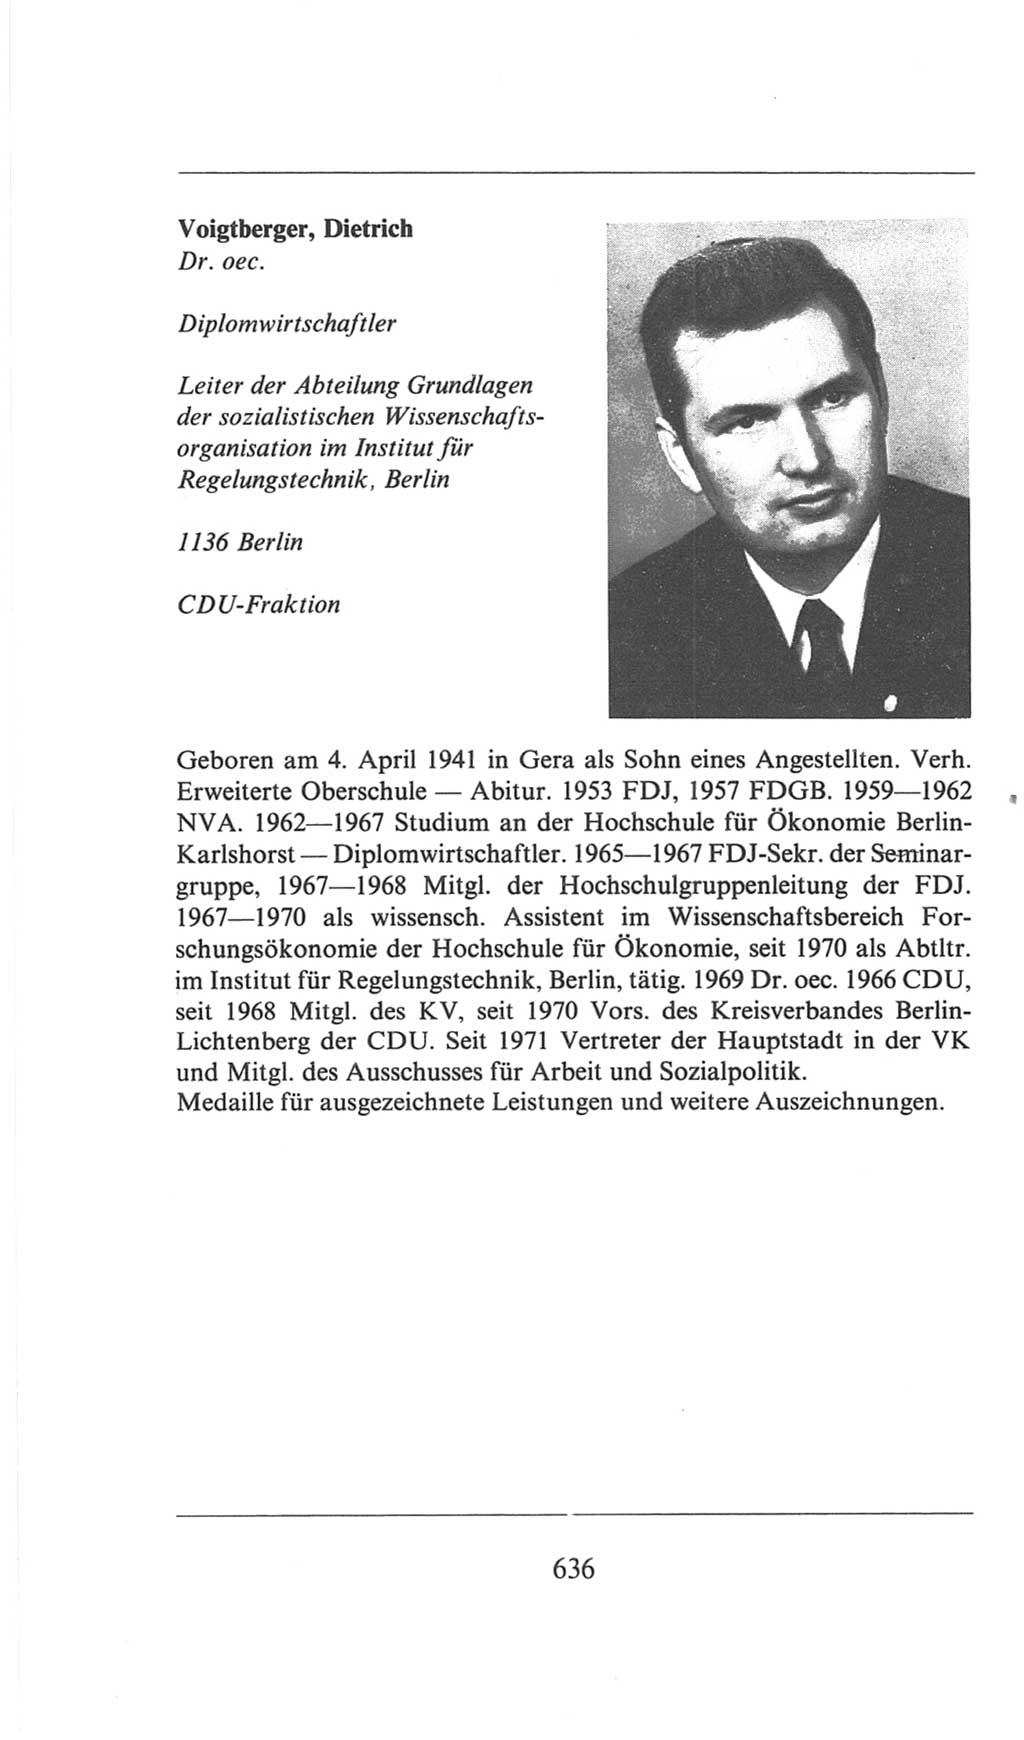 Volkskammer (VK) der Deutschen Demokratischen Republik (DDR), 6. Wahlperiode 1971-1976, Seite 636 (VK. DDR 6. WP. 1971-1976, S. 636)